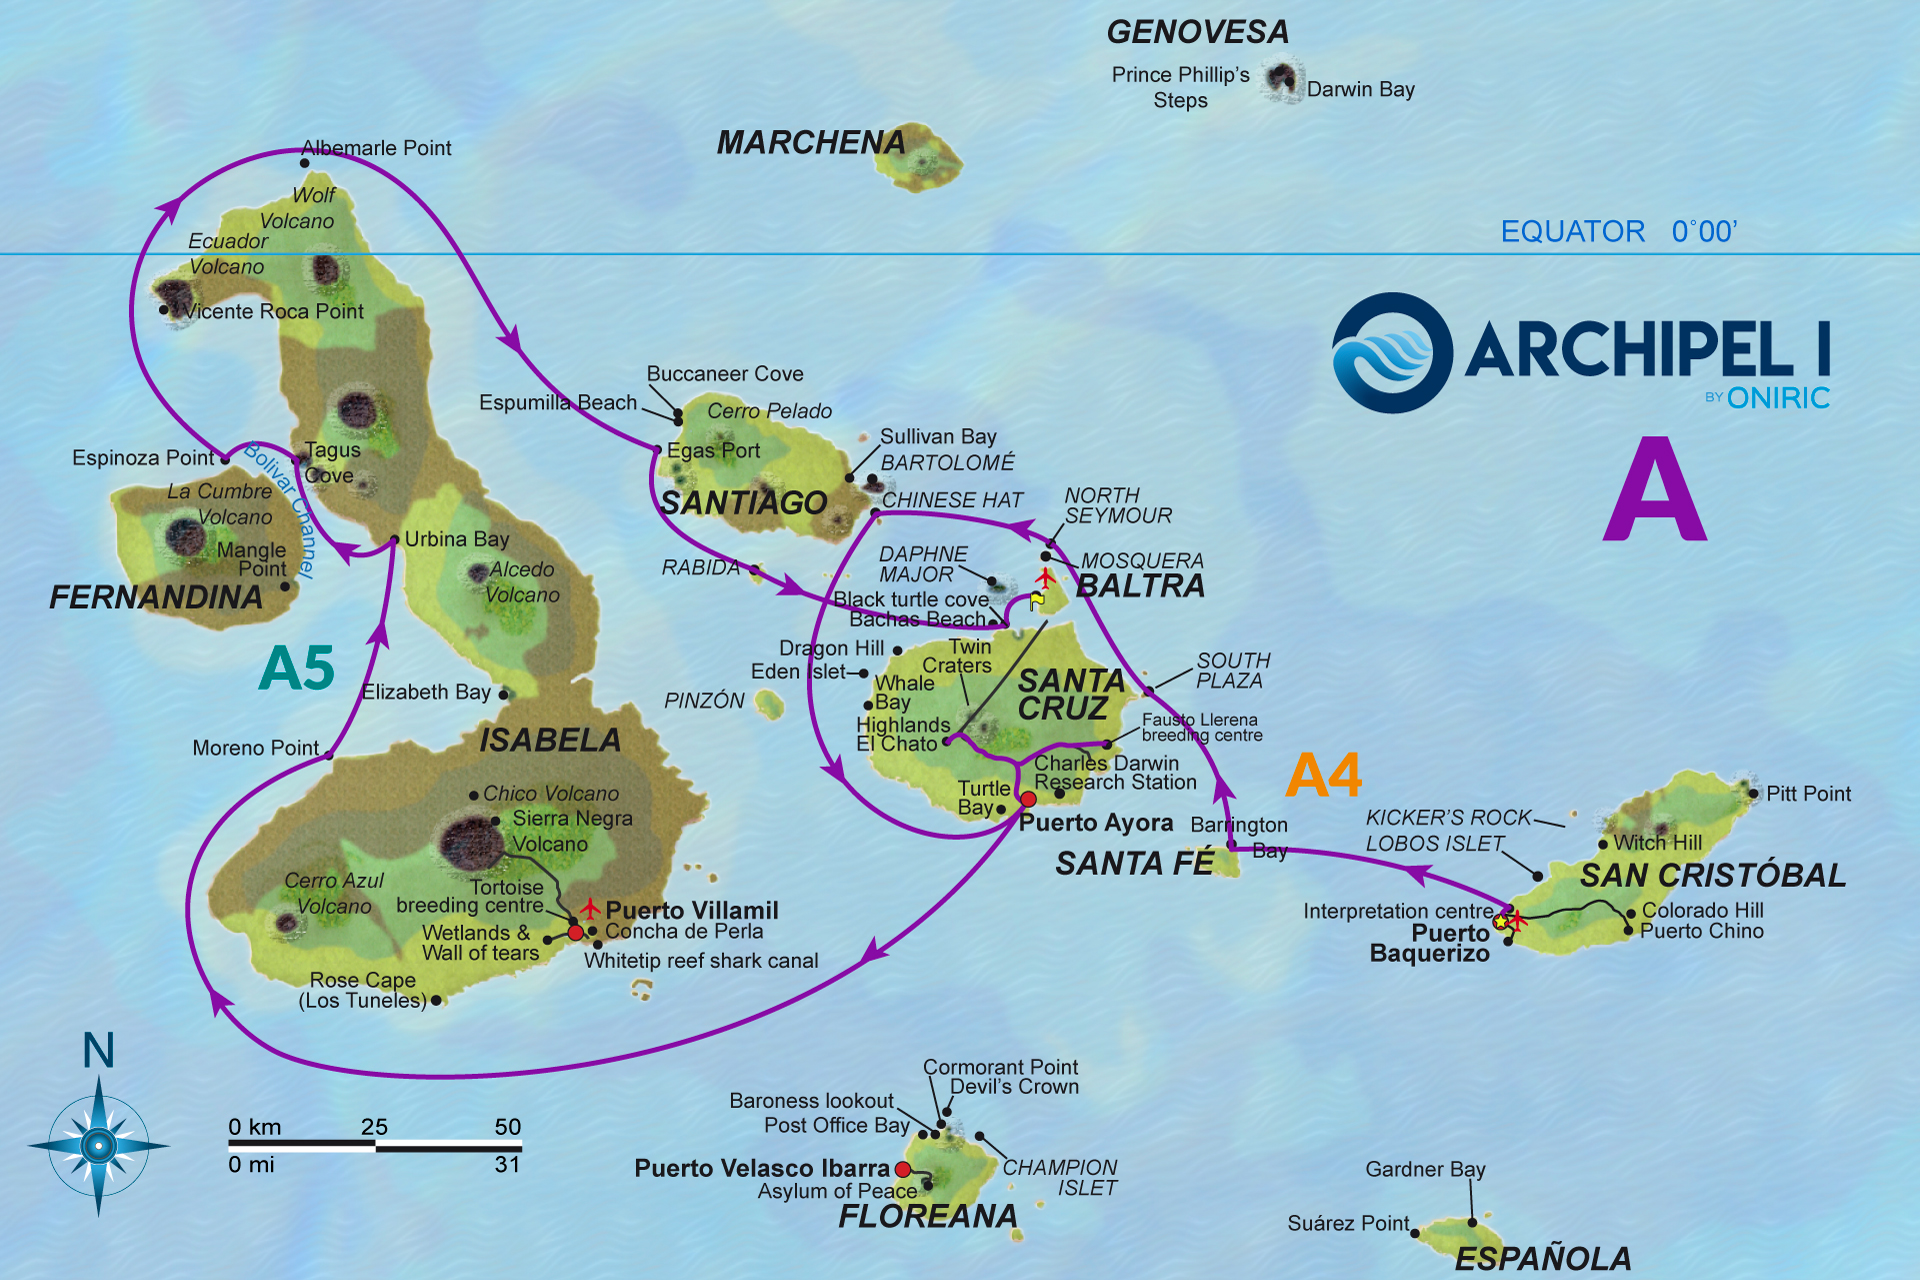 galapagos-map-archipel-1-A-oniric